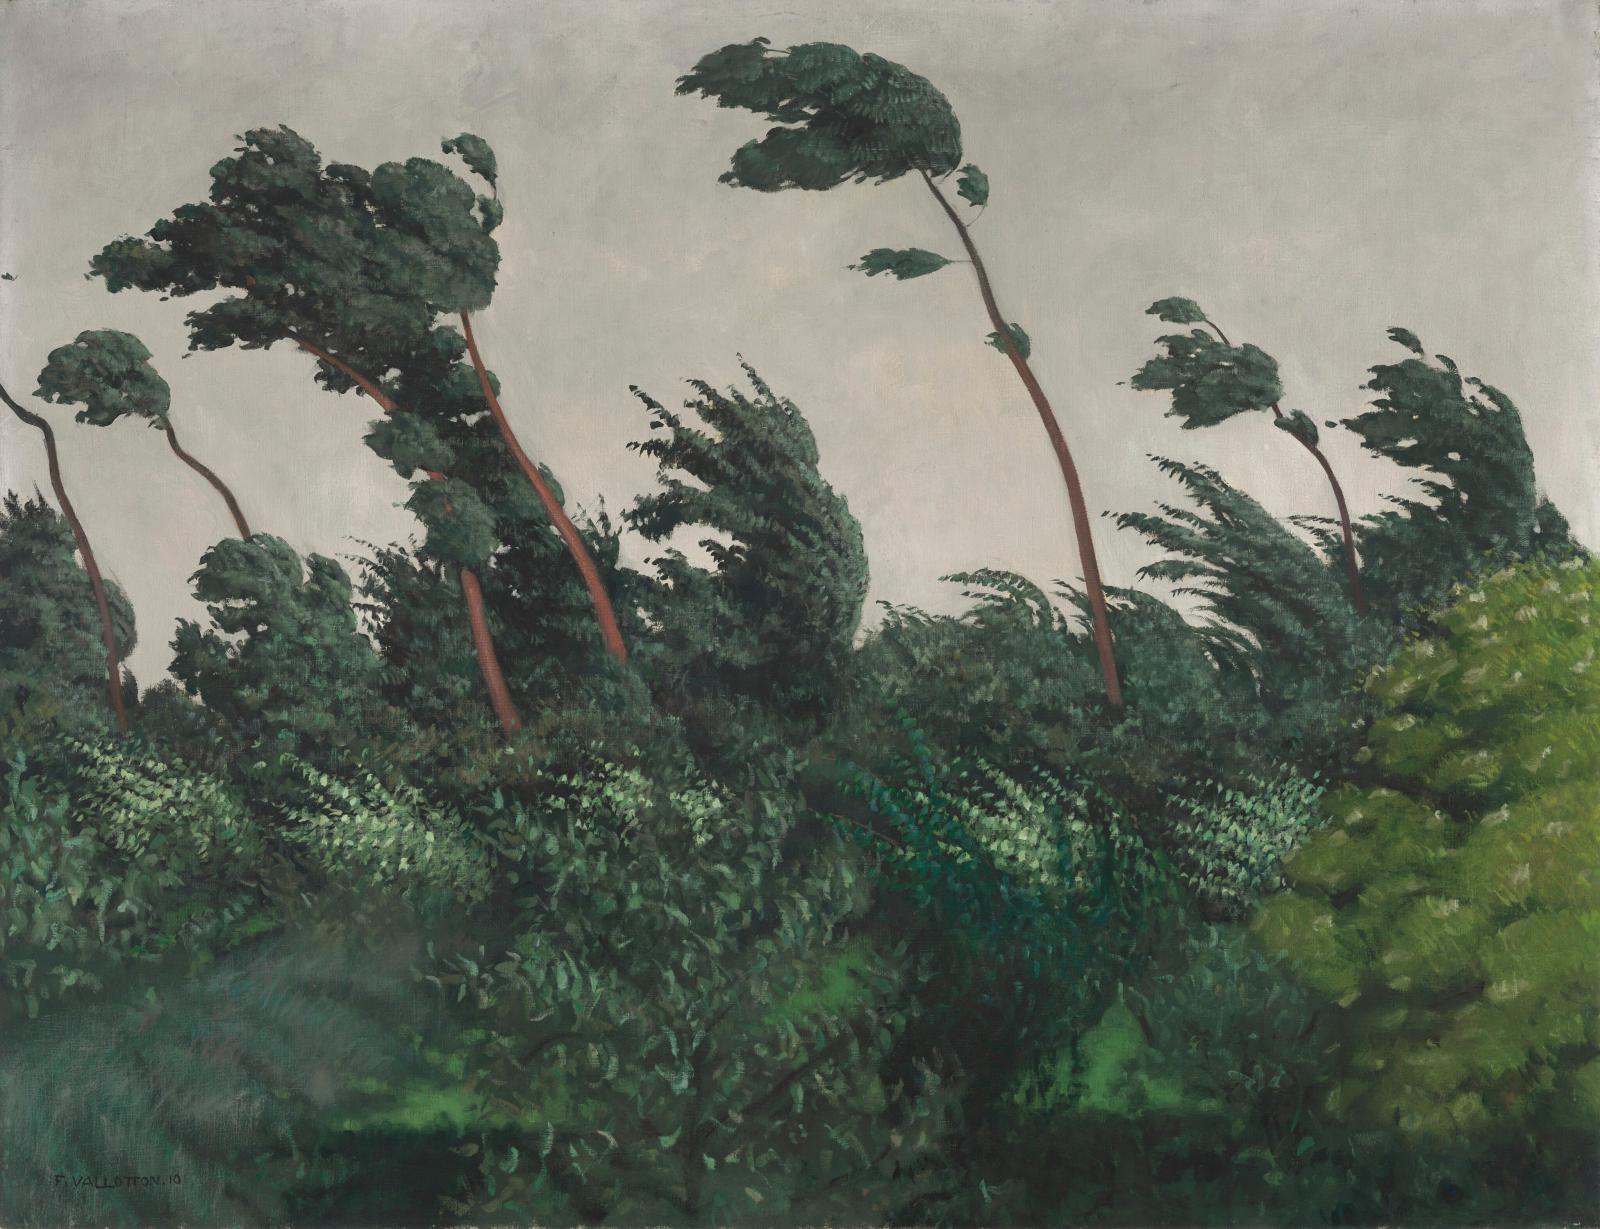 Félix Vallotton (1865-1925), Le Vent, 1910, huile sur toile, 89,2 x 116,2 cm, Washington, National Gallery of Art.